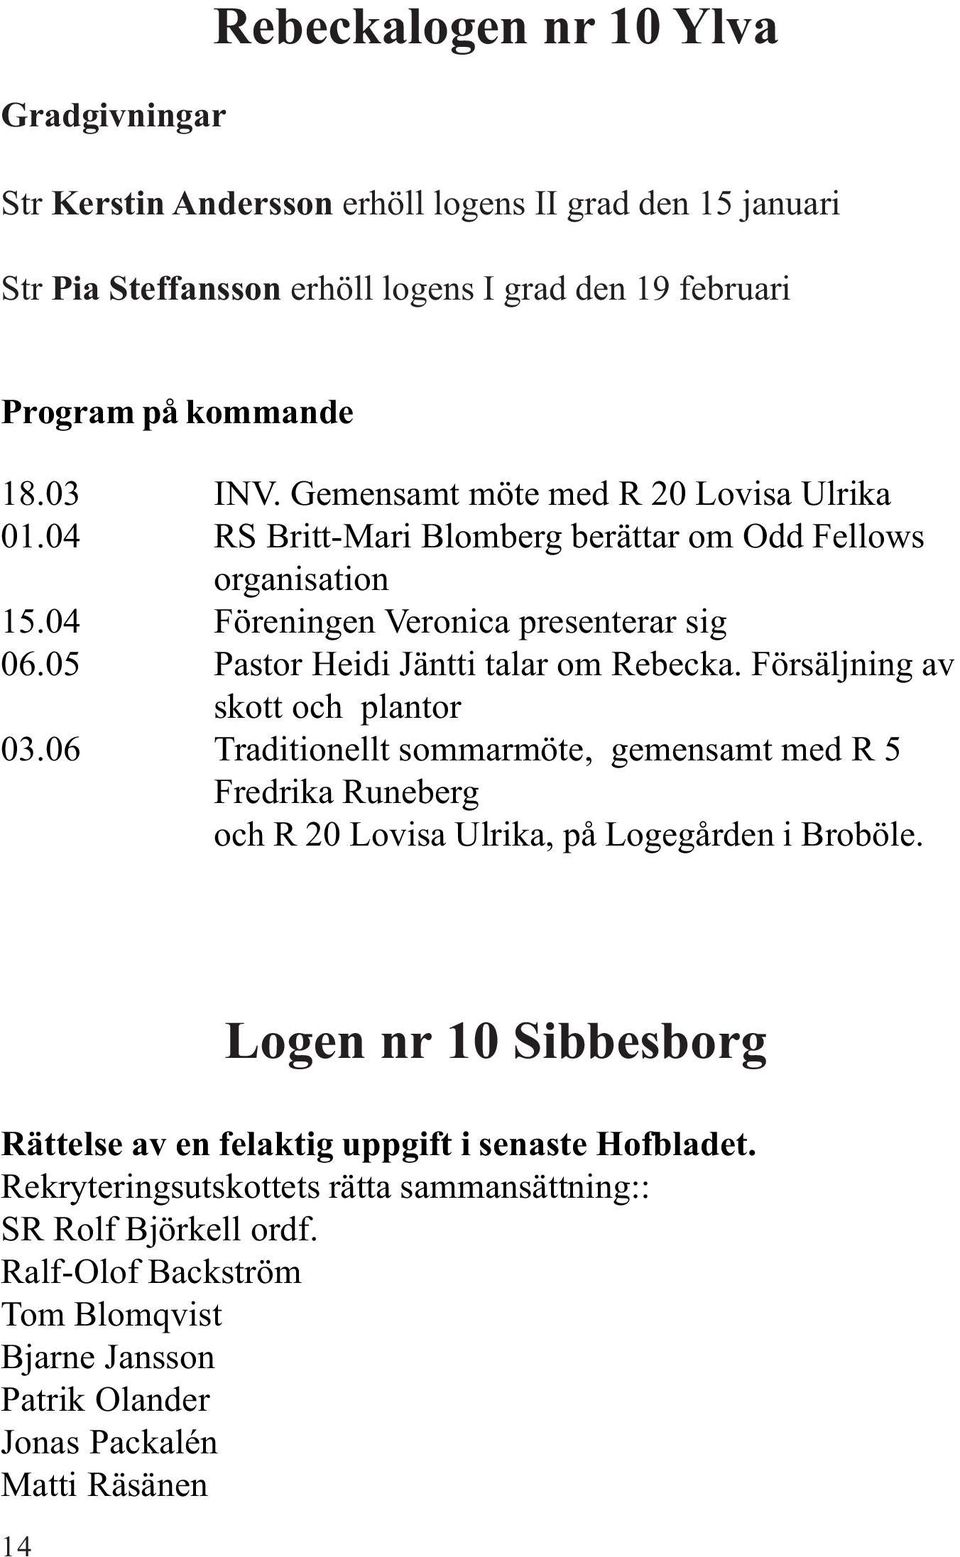 Försäljning av skott och plantor 03.06 Traditionellt sommarmöte, gemensamt med R 5 Fredrika Runeberg och R 20 Lovisa Ulrika, på Logegården i Broböle.